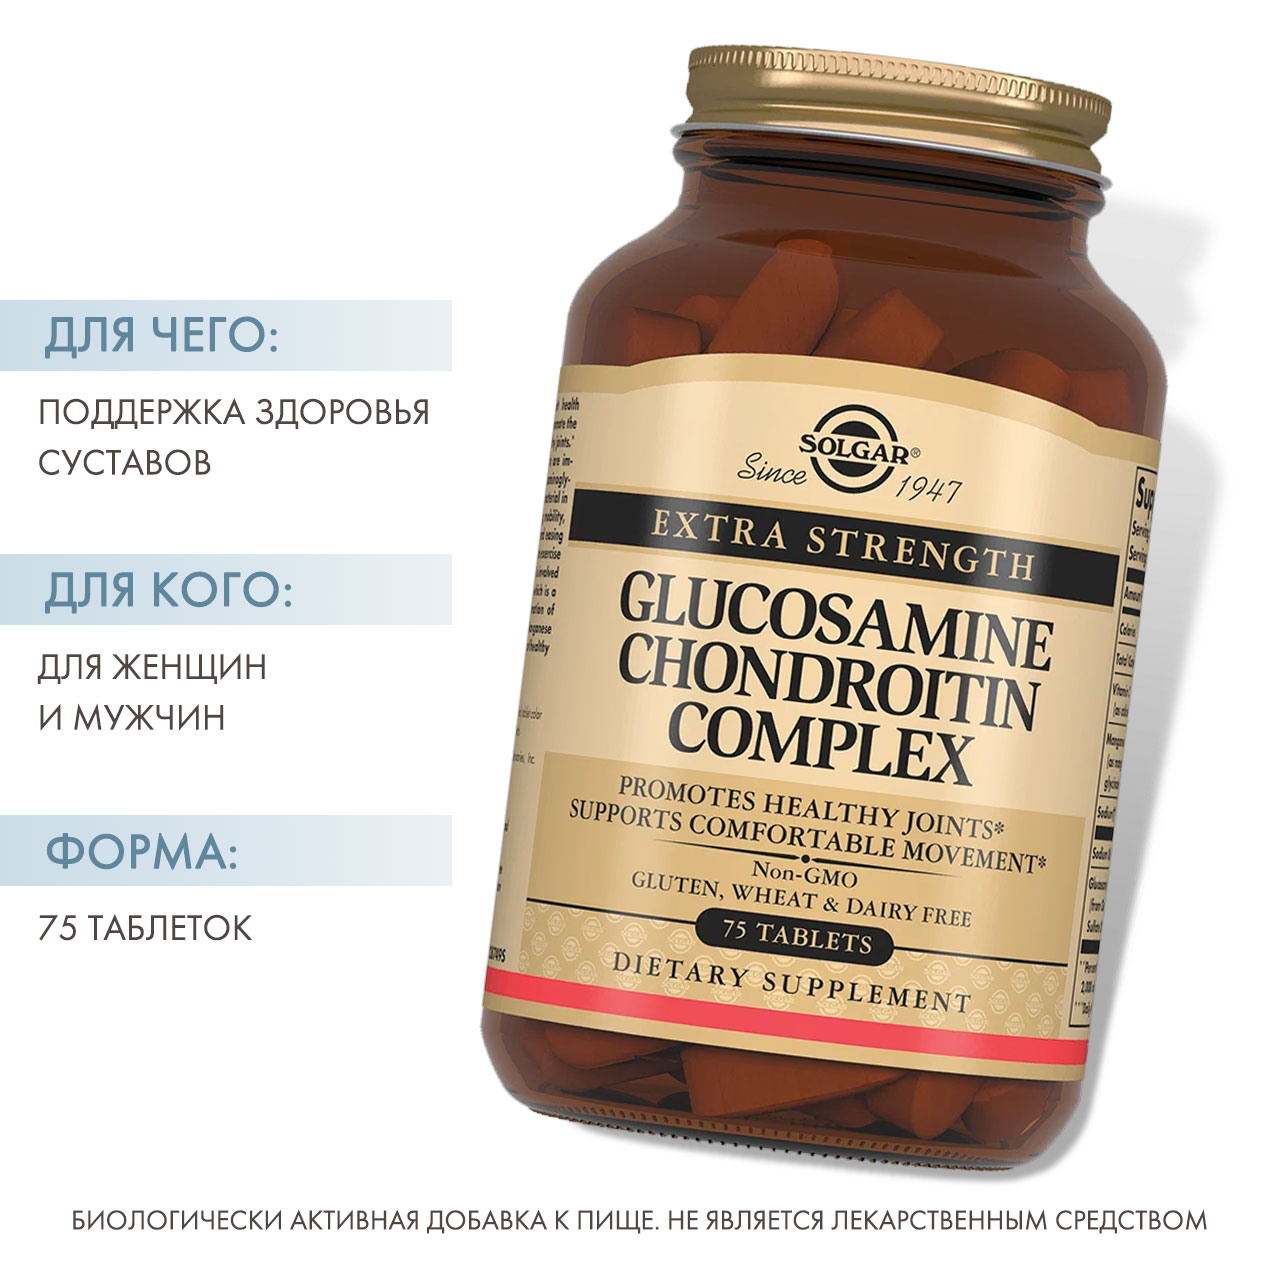 Solgar Глюкозамин-Хондроитин, для улучшения функционирования суставов и восстанавления хрящей 75 таблеток. фото